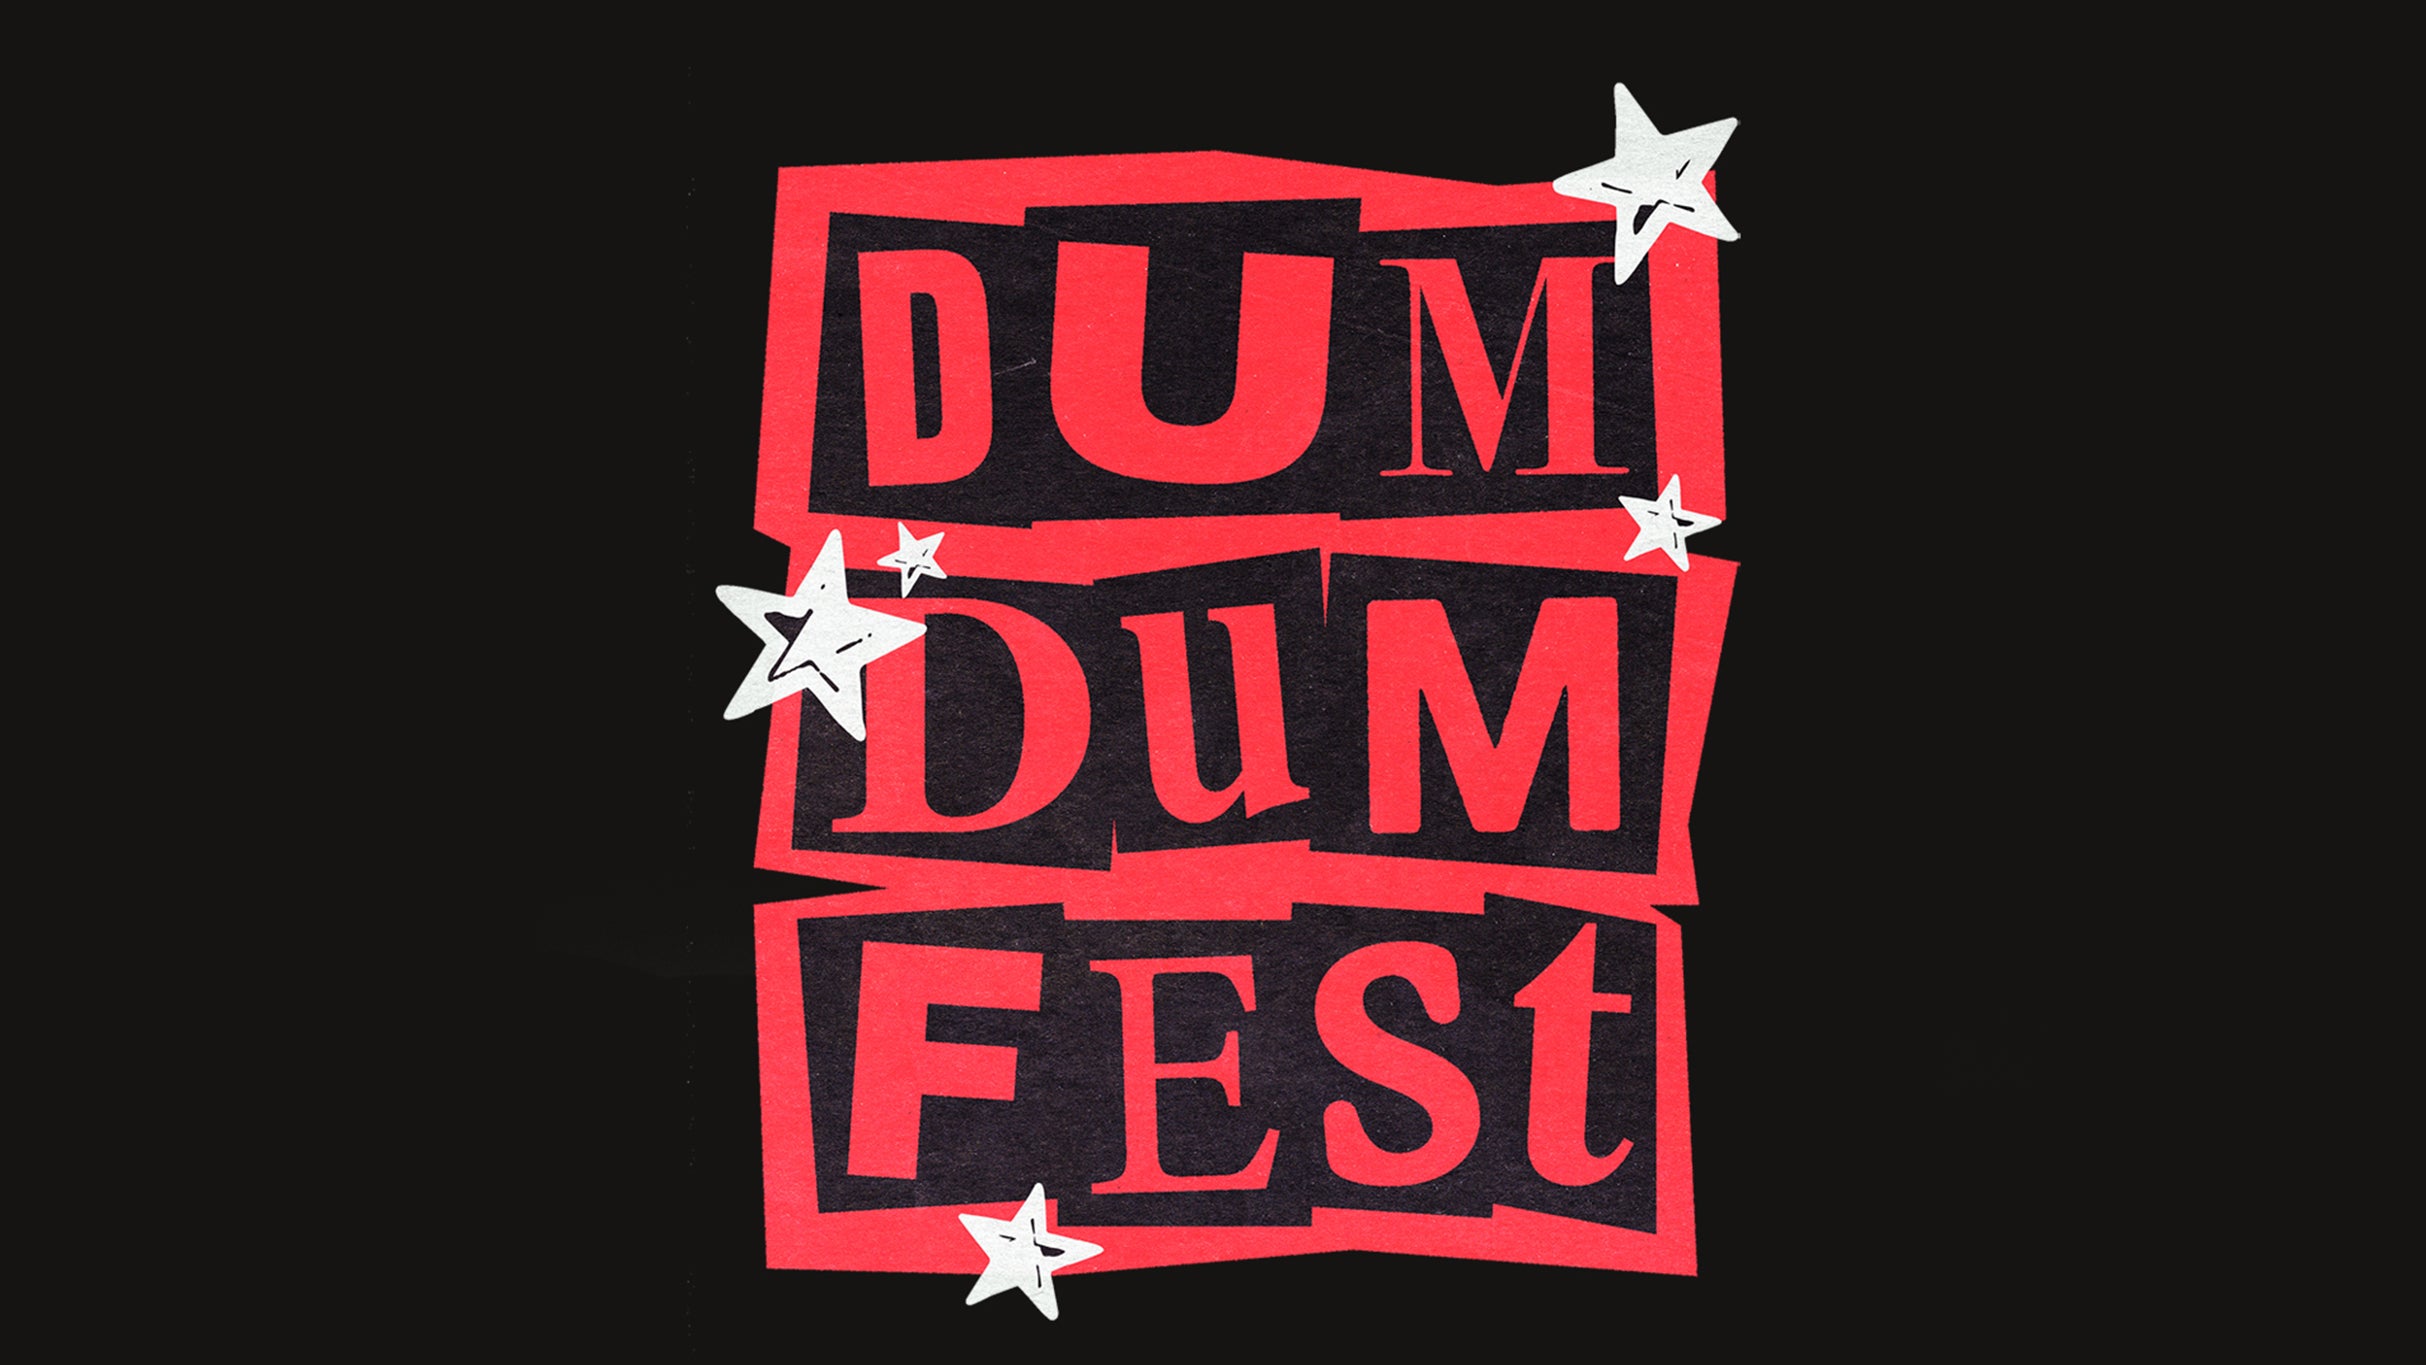 Dum Dum Fest at The Echo